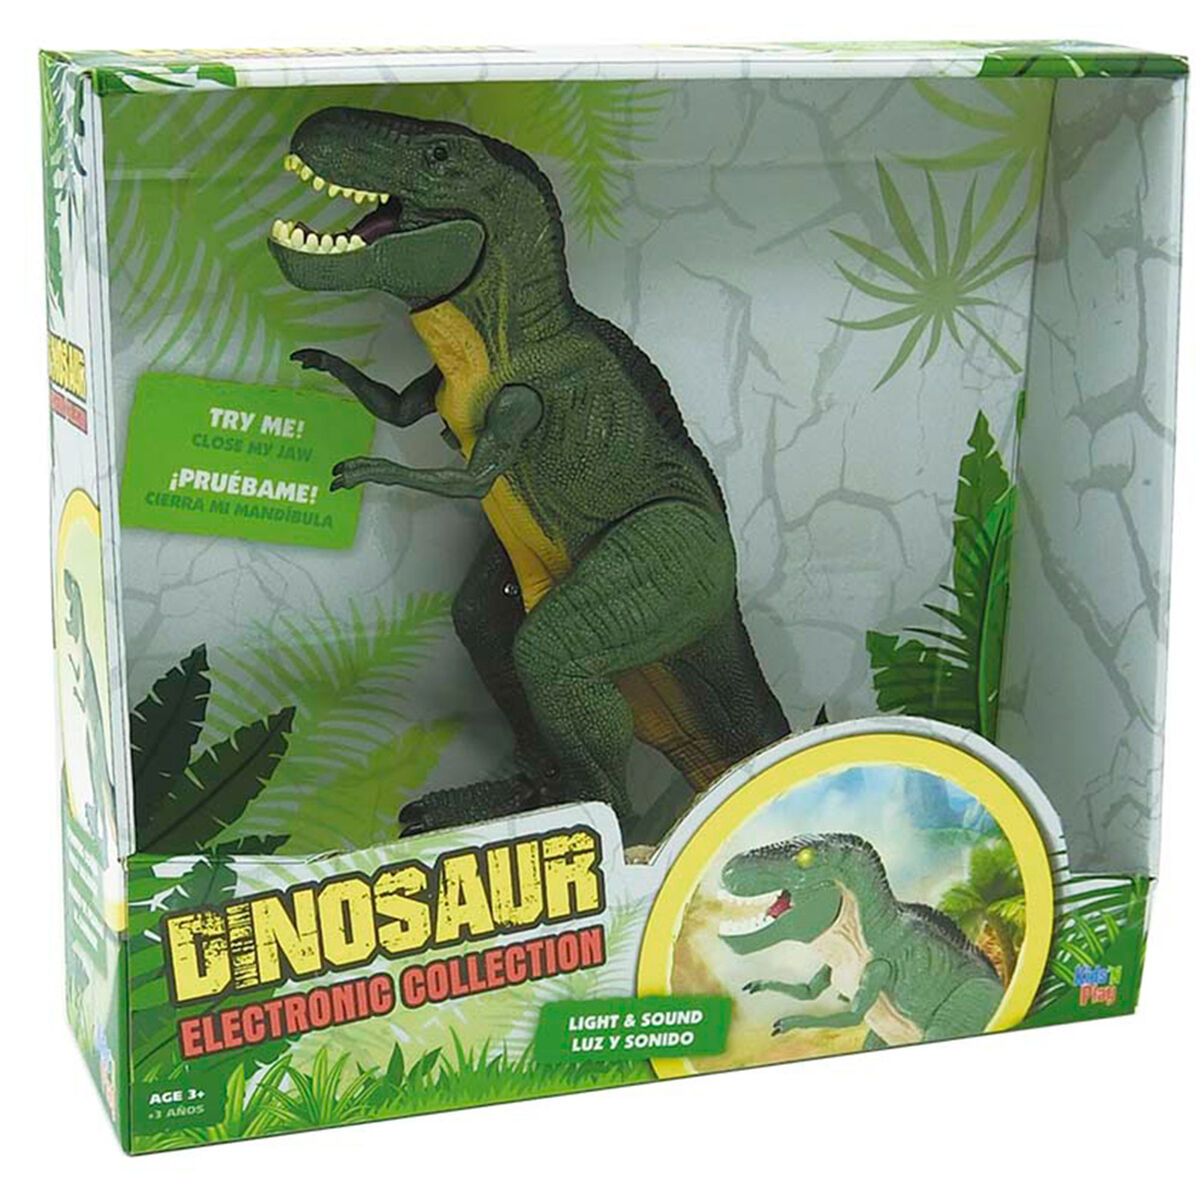 Dinosaurio Electronic Collection